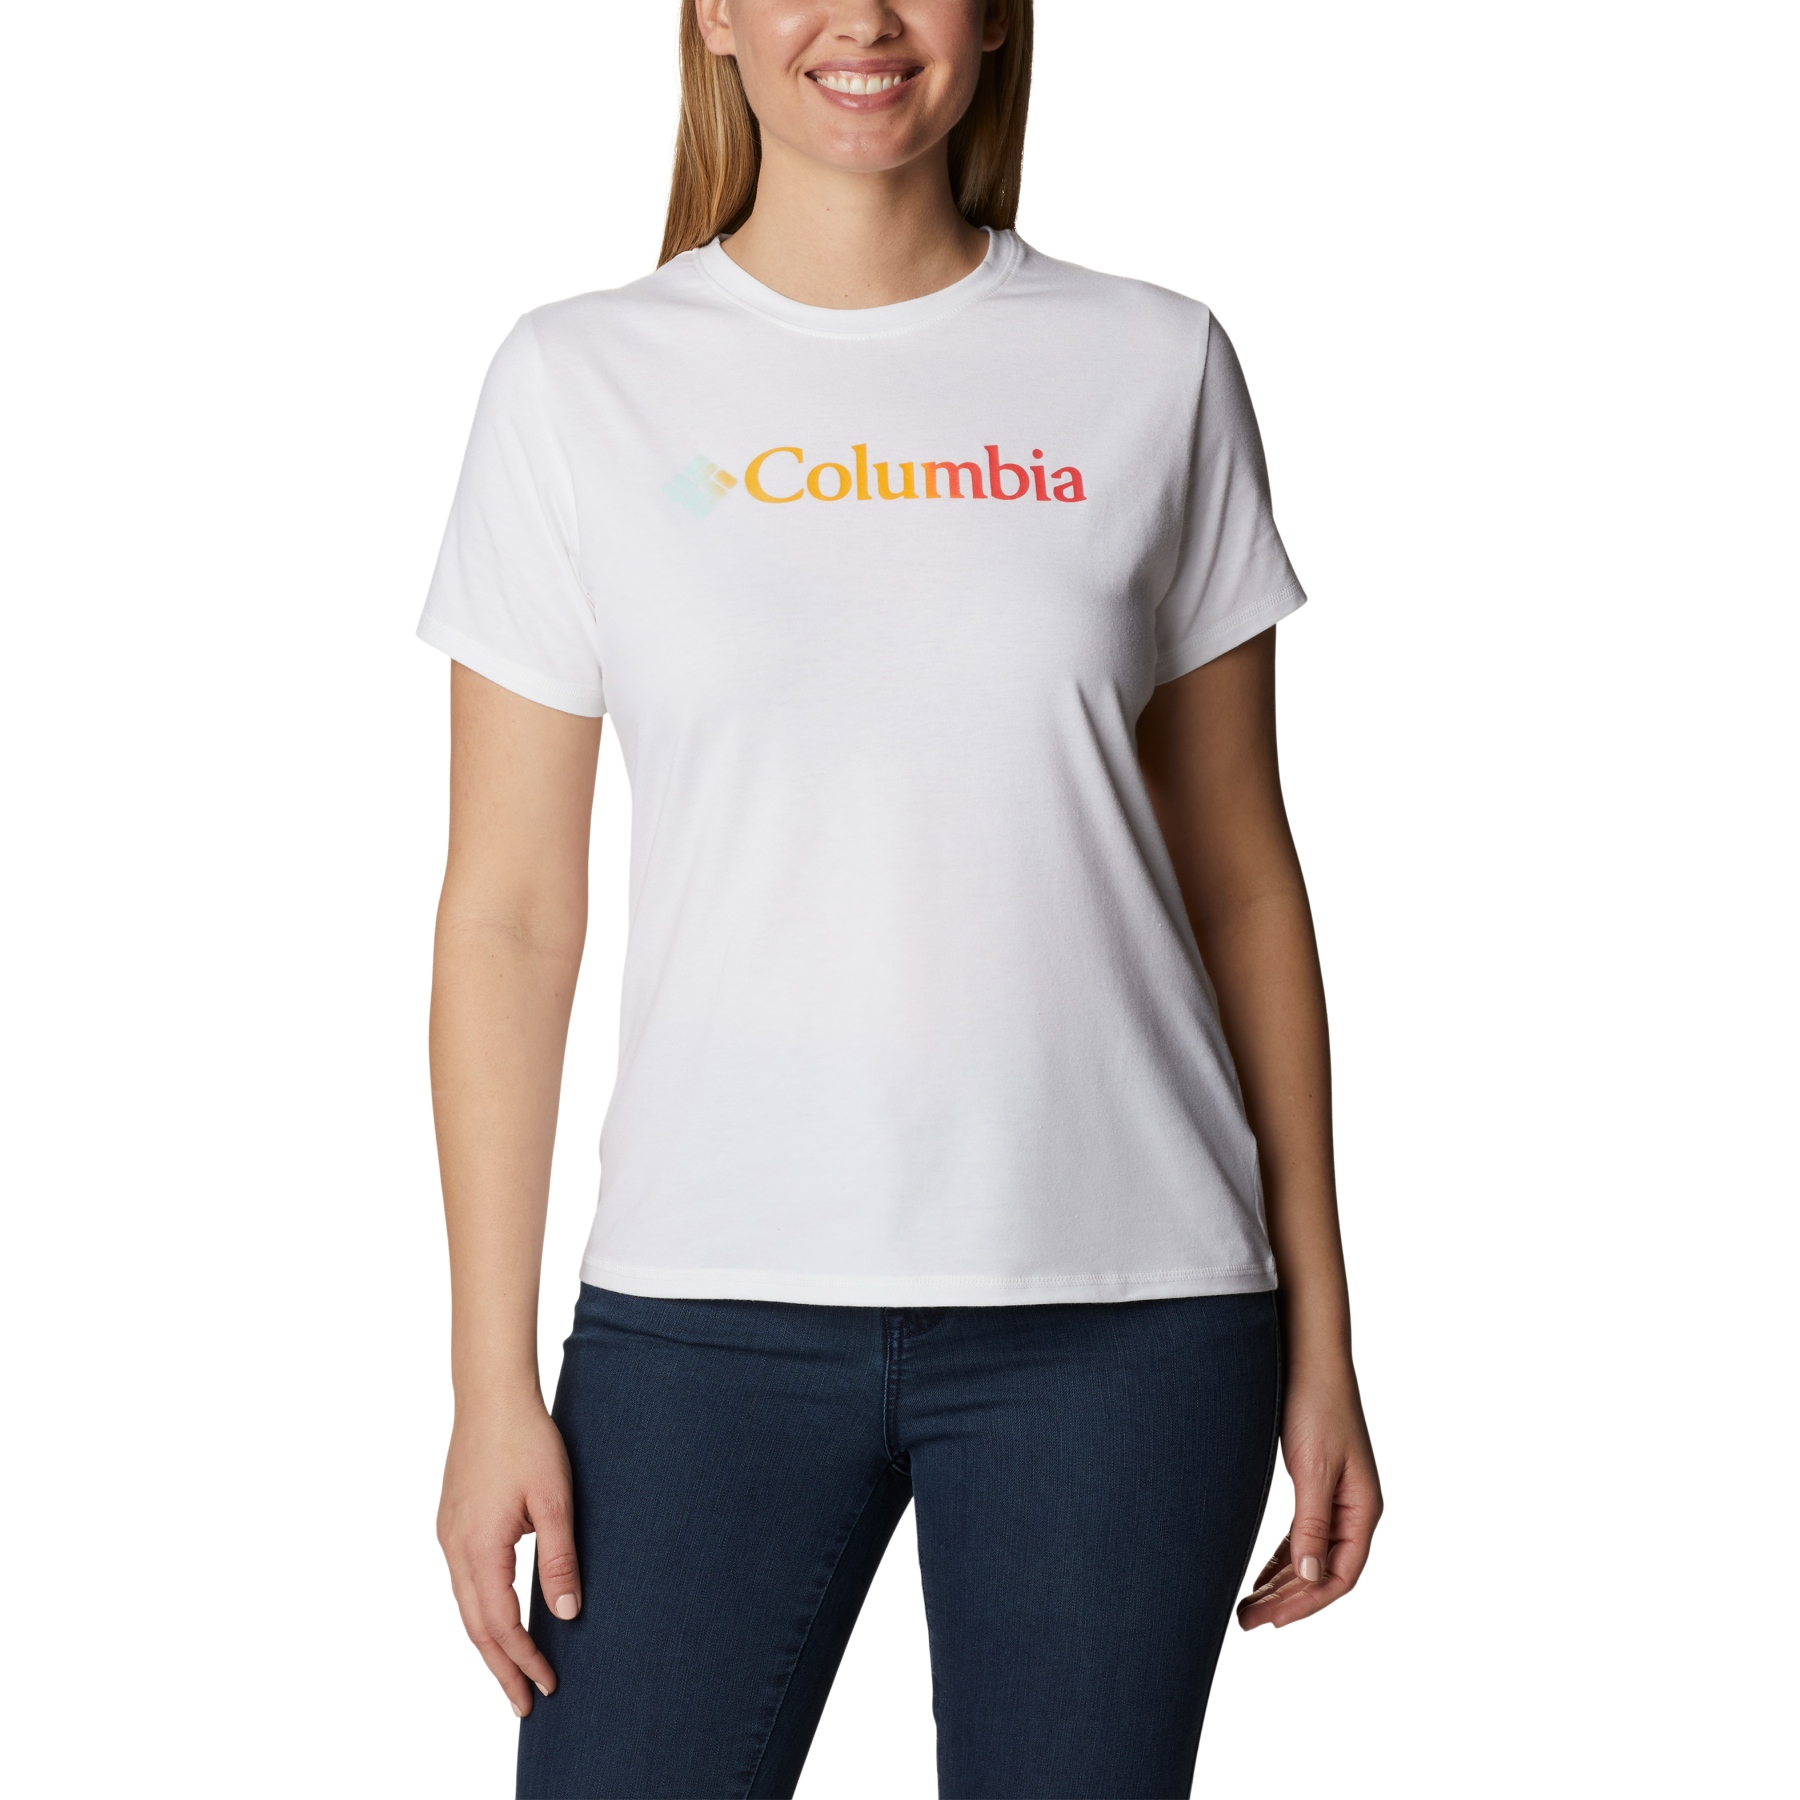 Produktbild von Columbia Sun Trek Graphic T-Shirt Damen - White/Branded Gradient